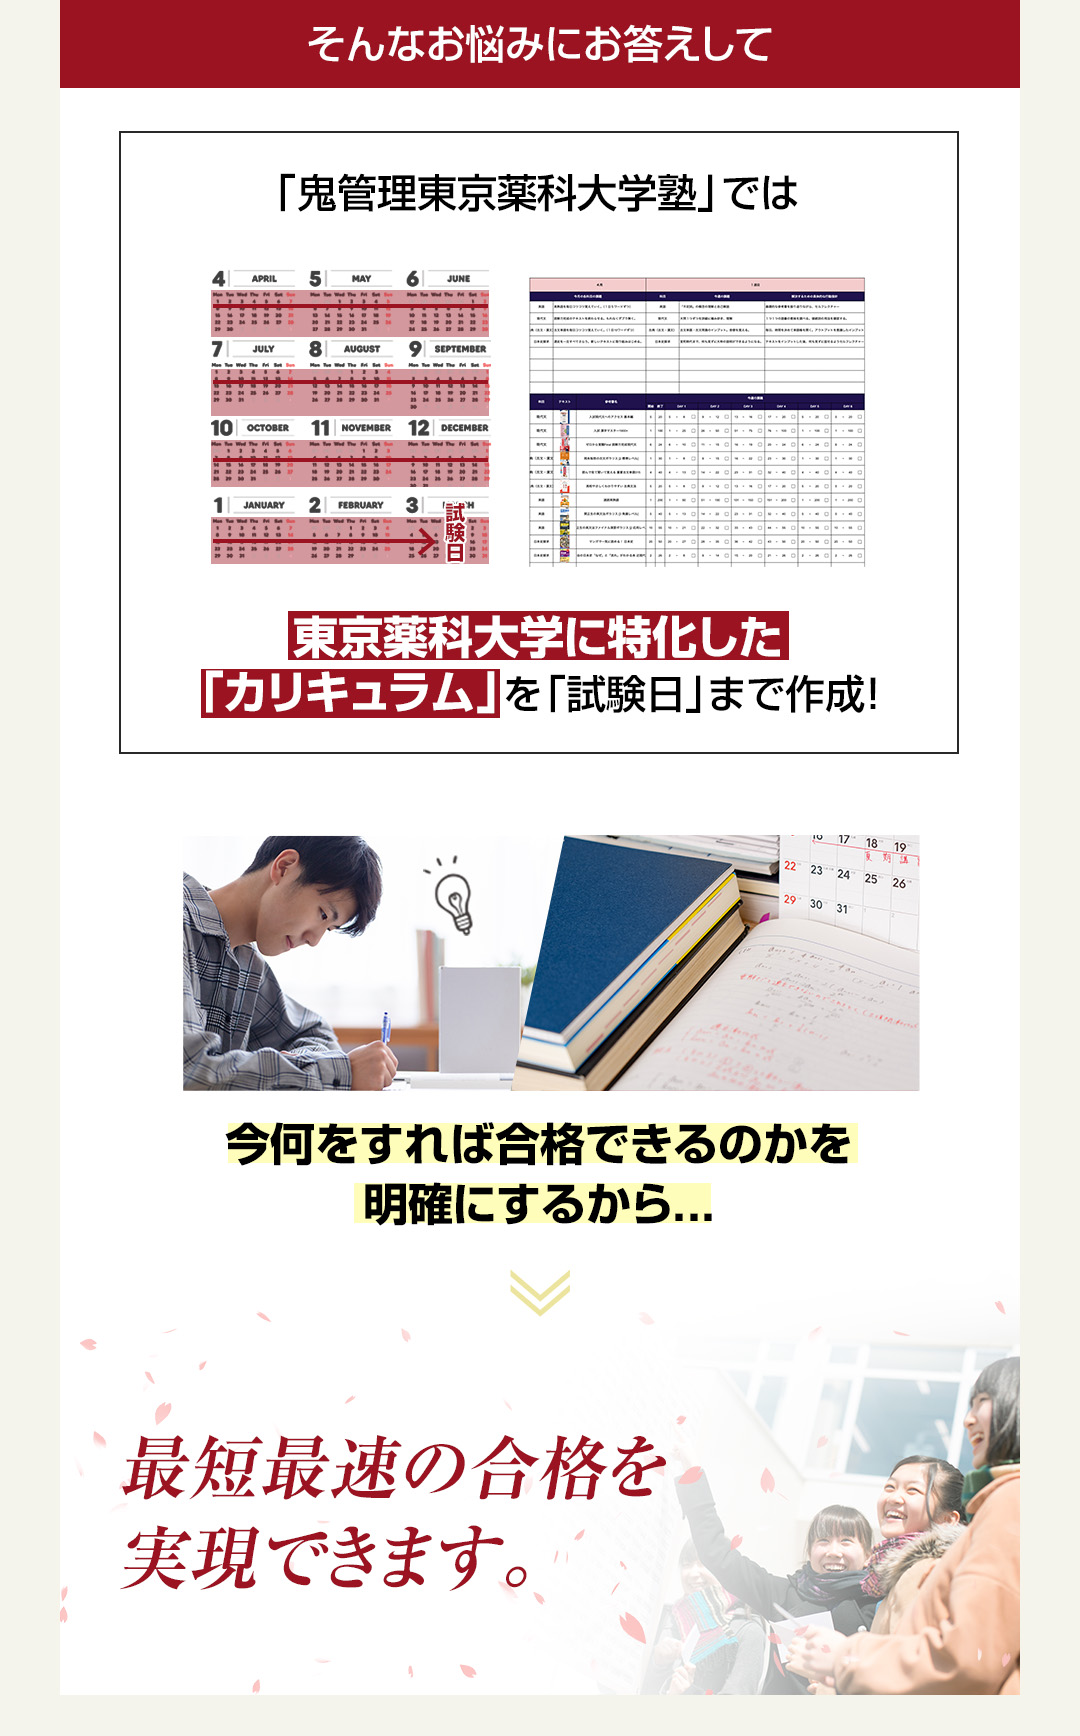 「鬼管理東京薬科大学塾」では東京薬科大学に特化した「カリキュラム」を「試験日」まで作成